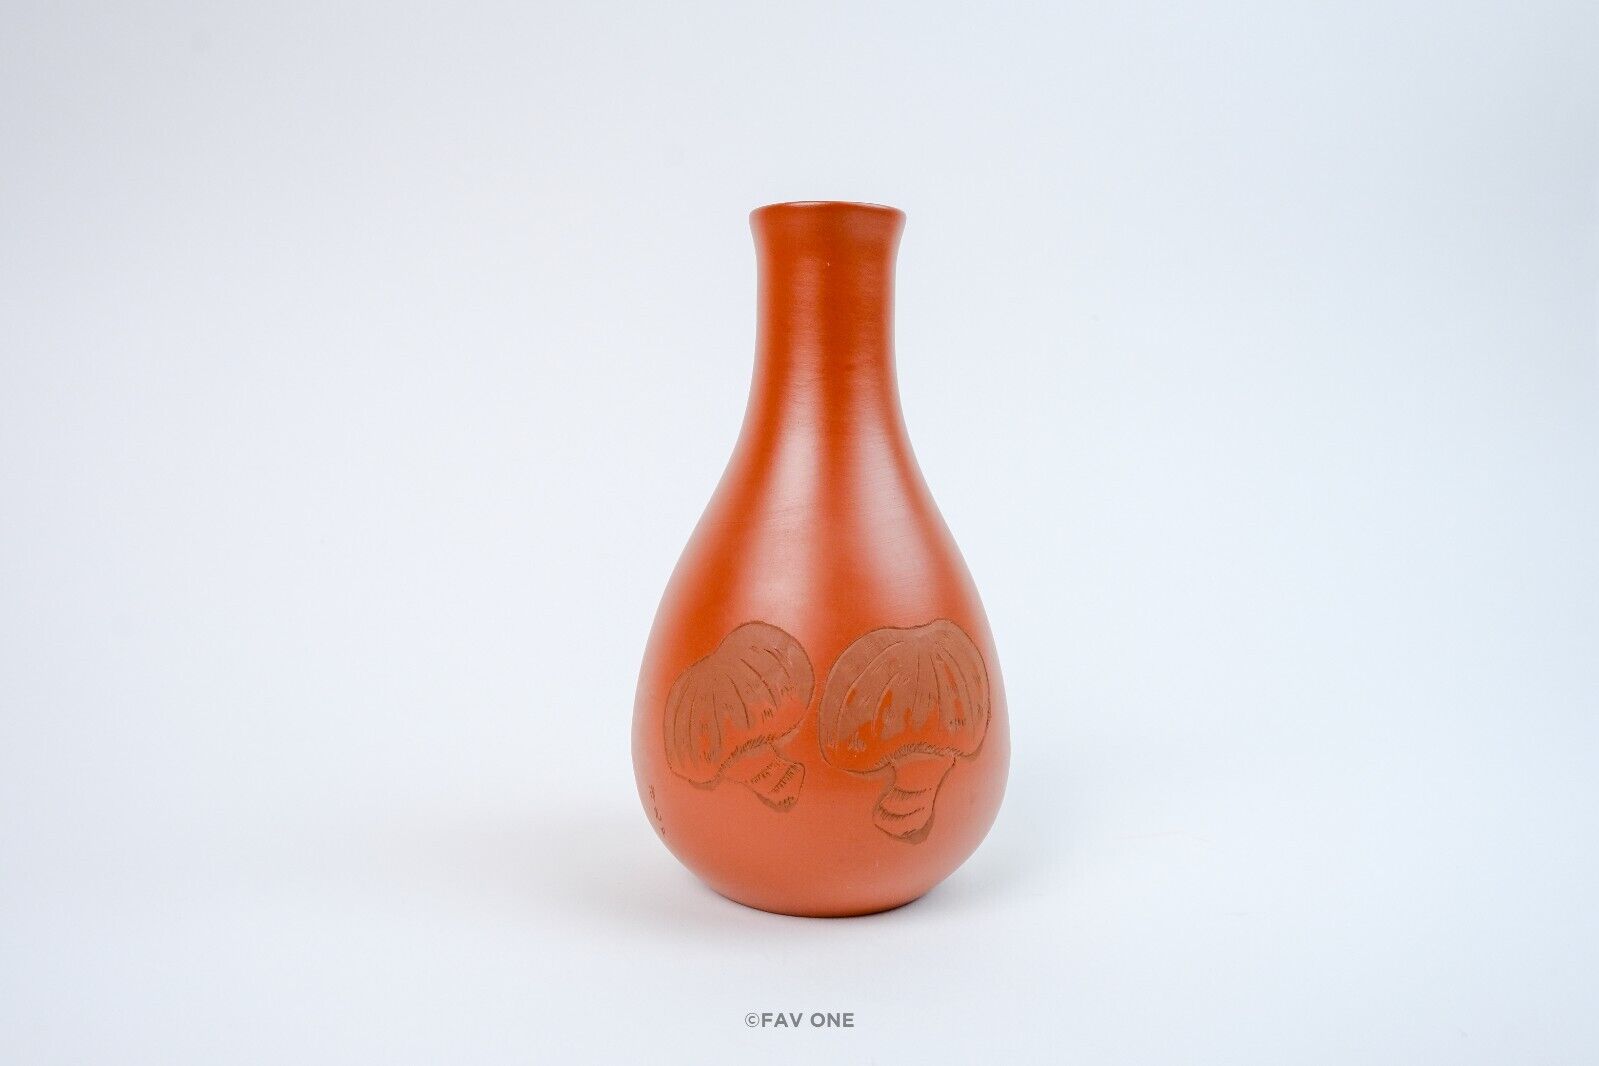 「MADE IN JAPAN Tokoname ware 」tokkuri sake bottle and two cups.